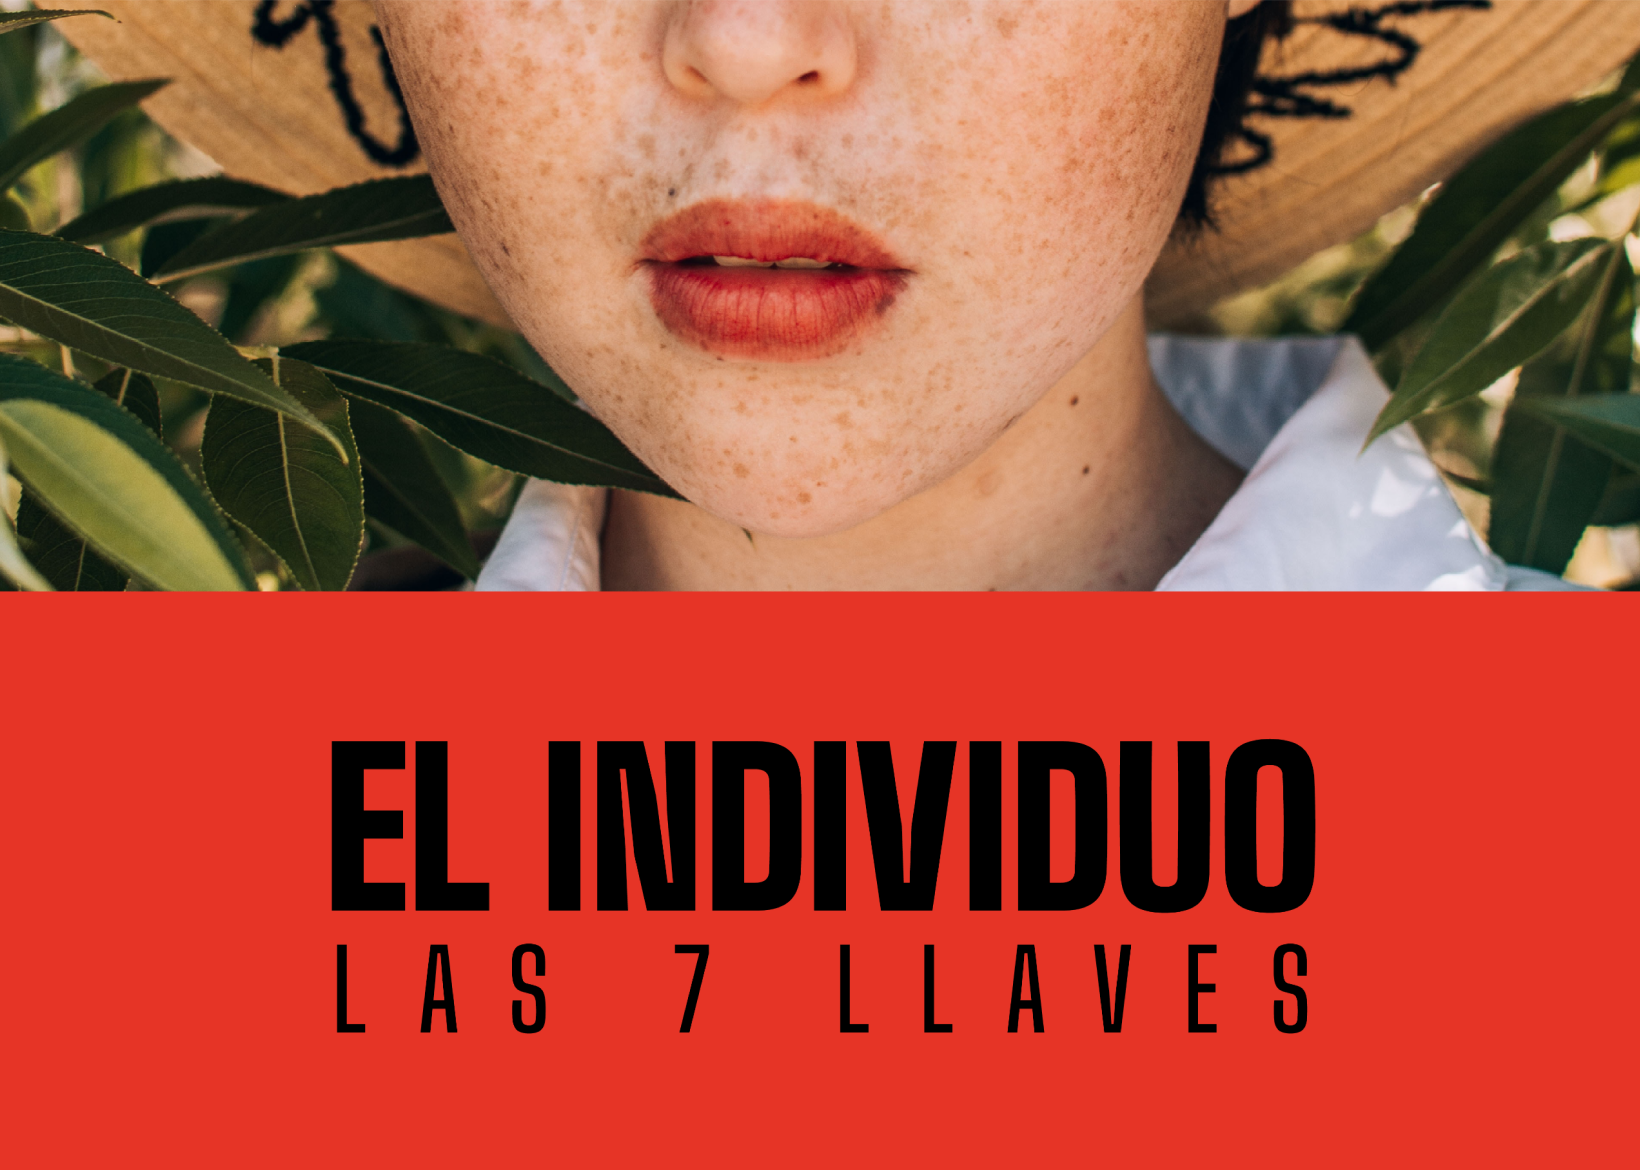 EL INDIVIDUO by Alejandro de Francisco Castillo - Creative Work